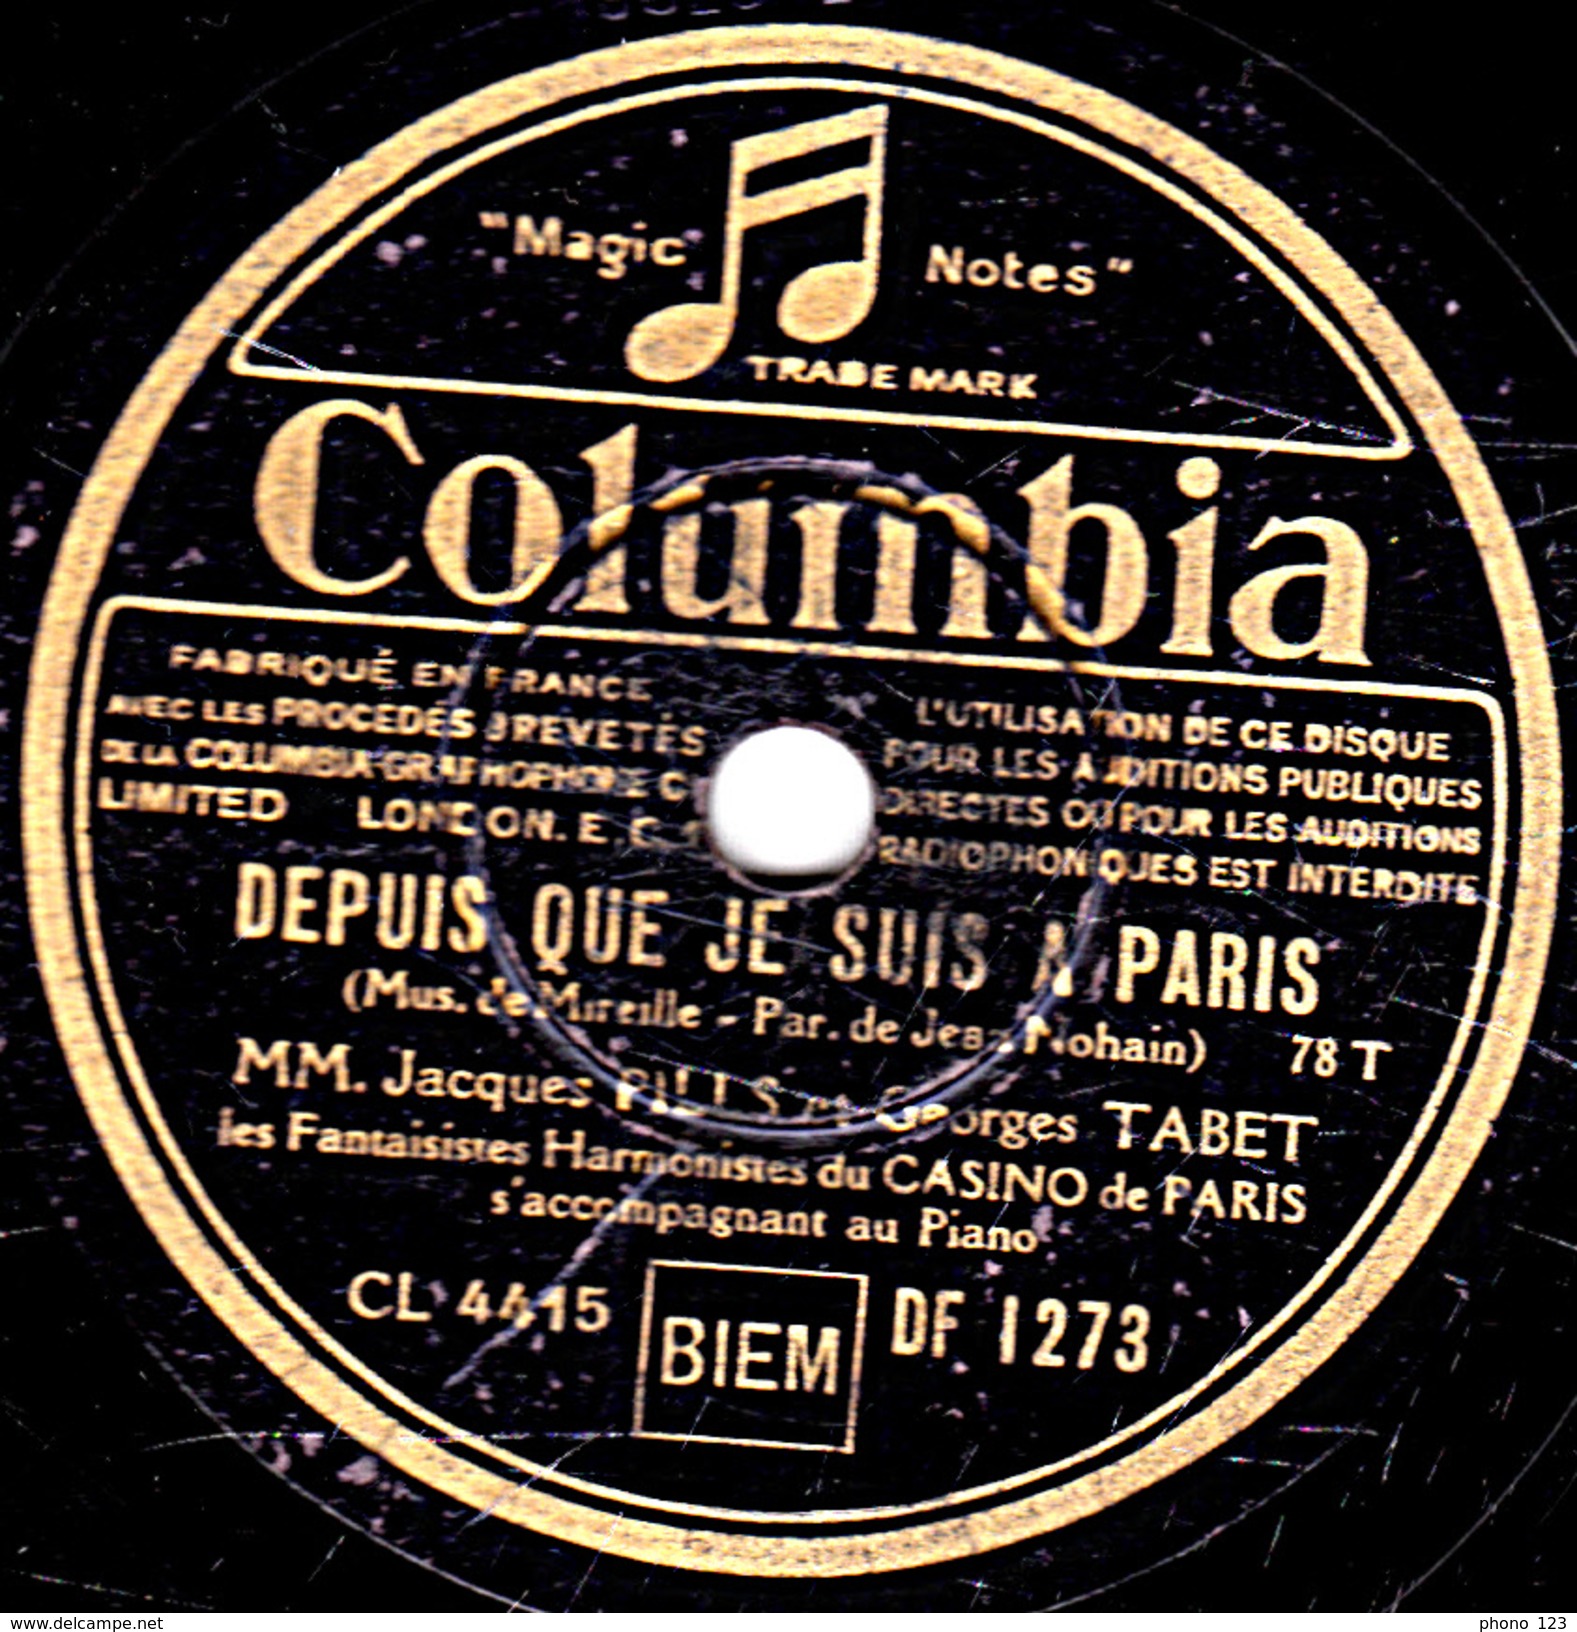 78 T.- 25 Cm - état B - PILLS Et TABET - DEPUIS QUE JE SUIS A PARIS - C'EST UNE JOIE QUI MONTE MONTE... - 78 T - Disques Pour Gramophone